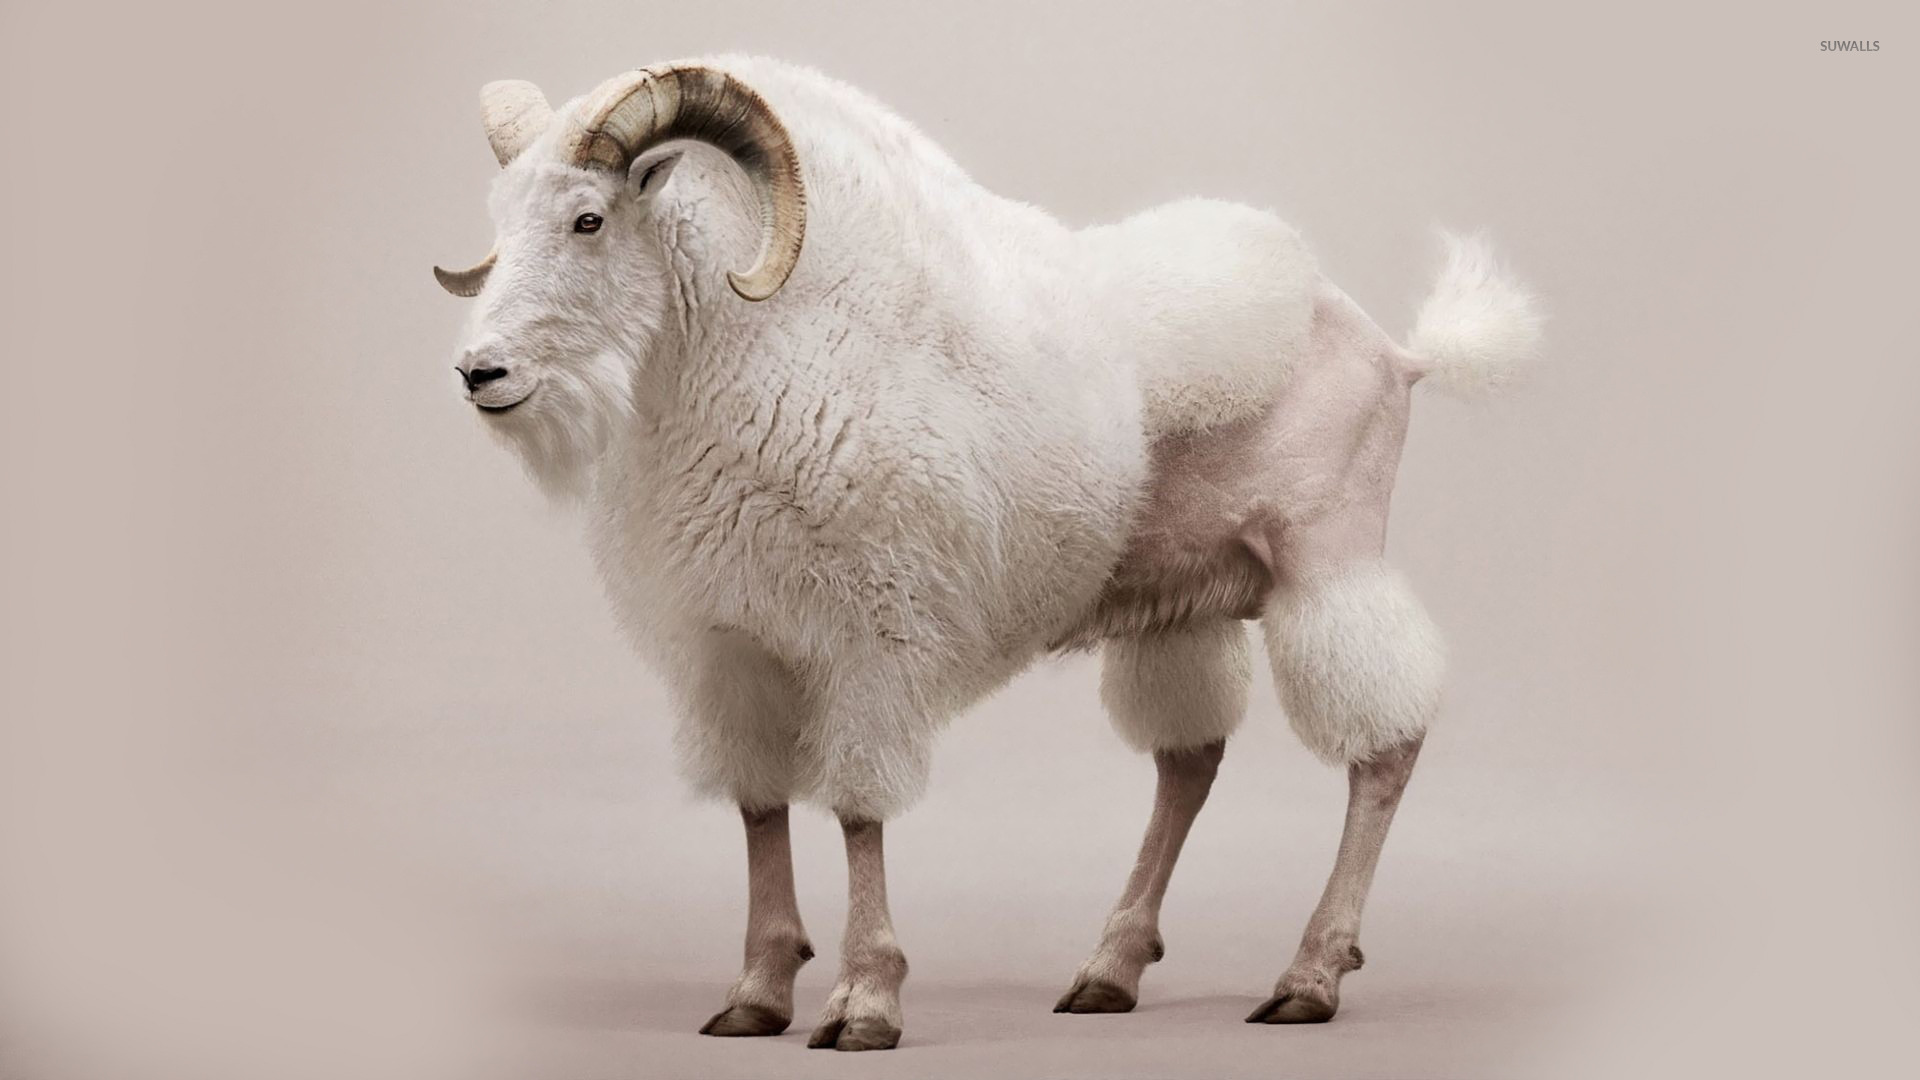 Shaved goat